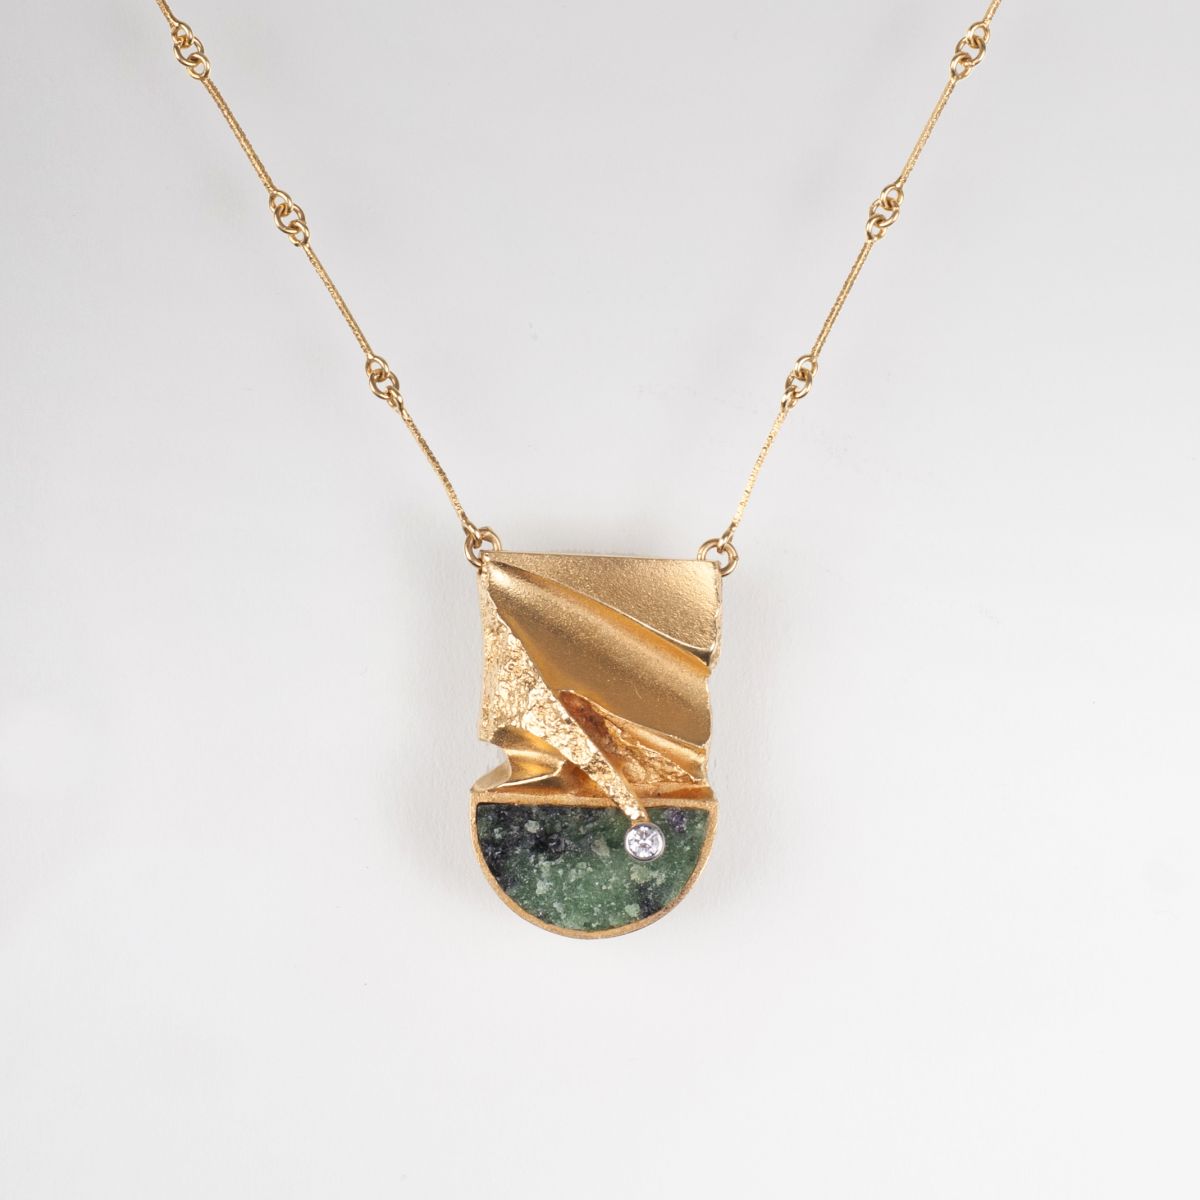 A modern necklace with zoisite diamond pendant by Björn Weckström